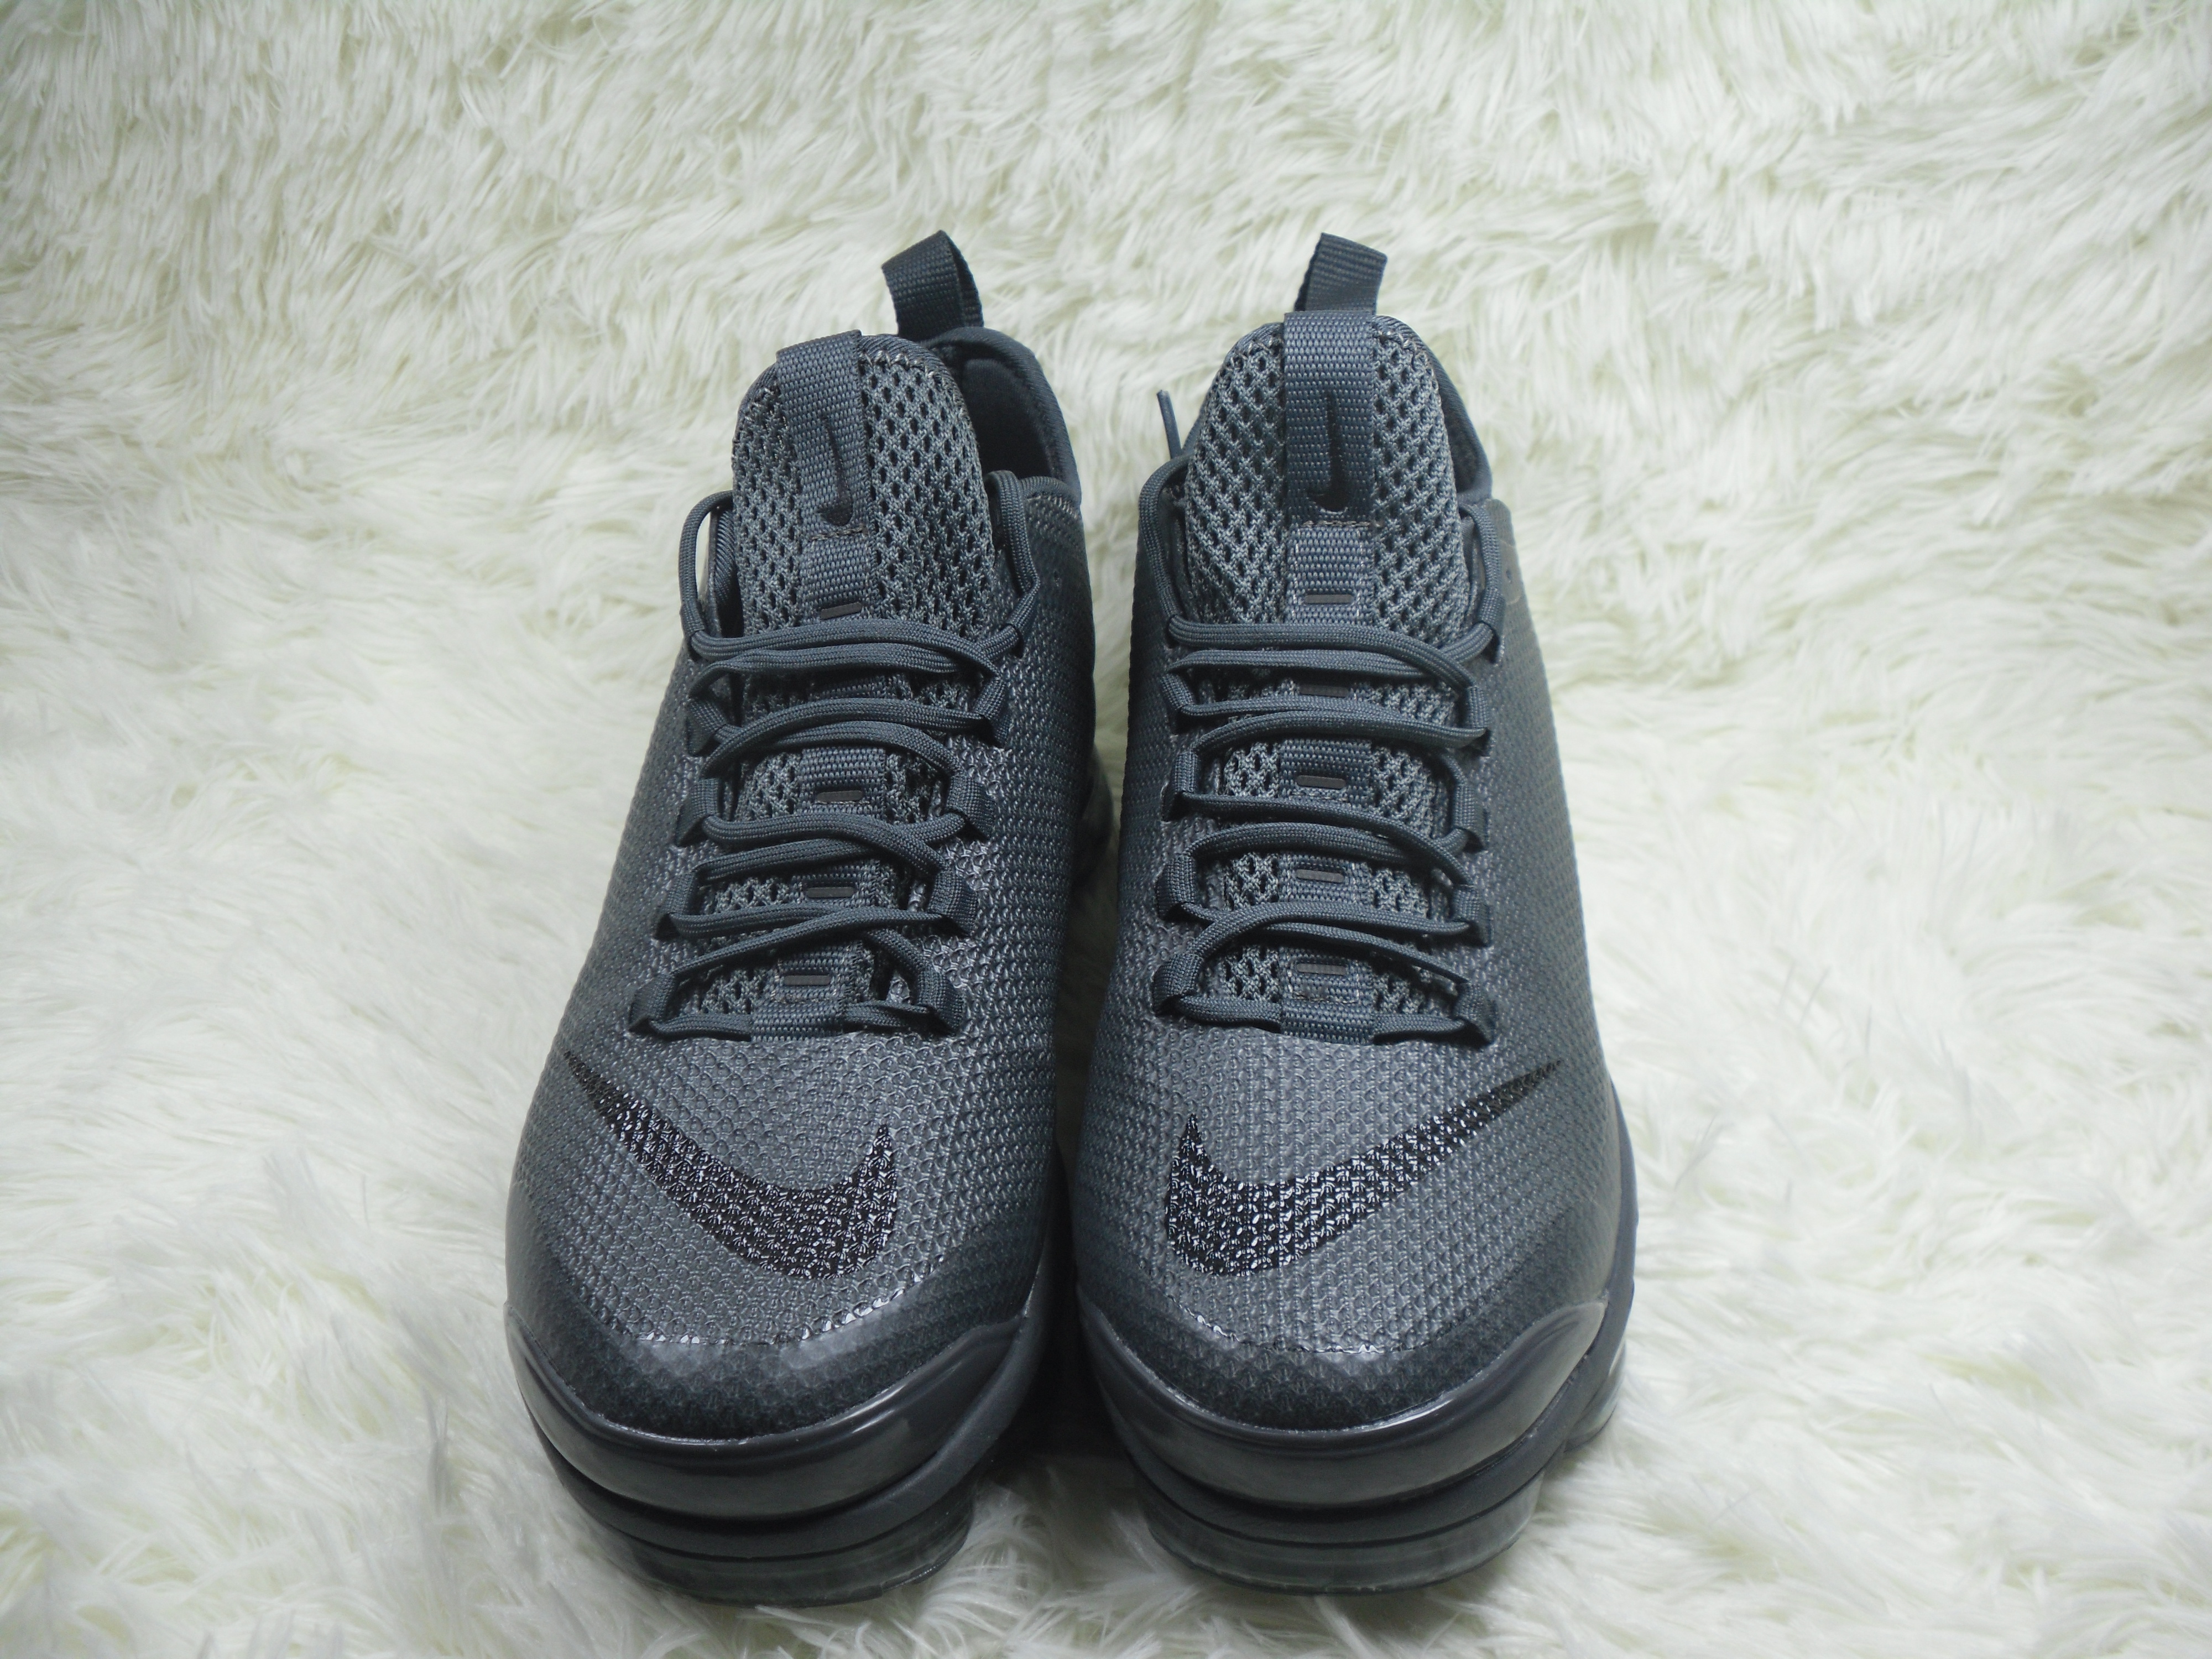 Nike Air Max Plus TN Summer Carbon Black Shoes